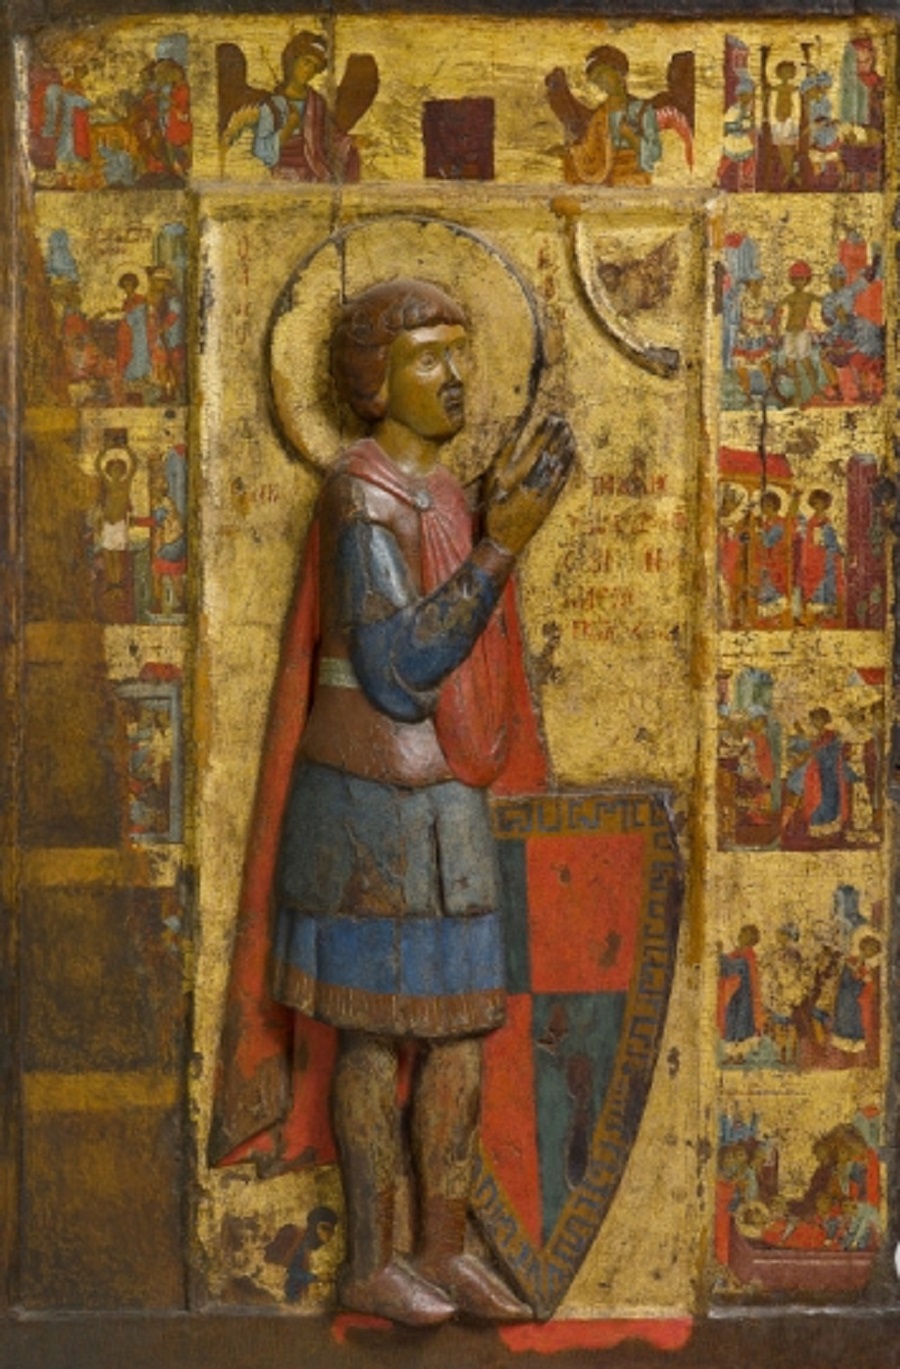  Рельефный образ великомученика Георгия со сценами жития, выполненный в технике резьбы по дереву